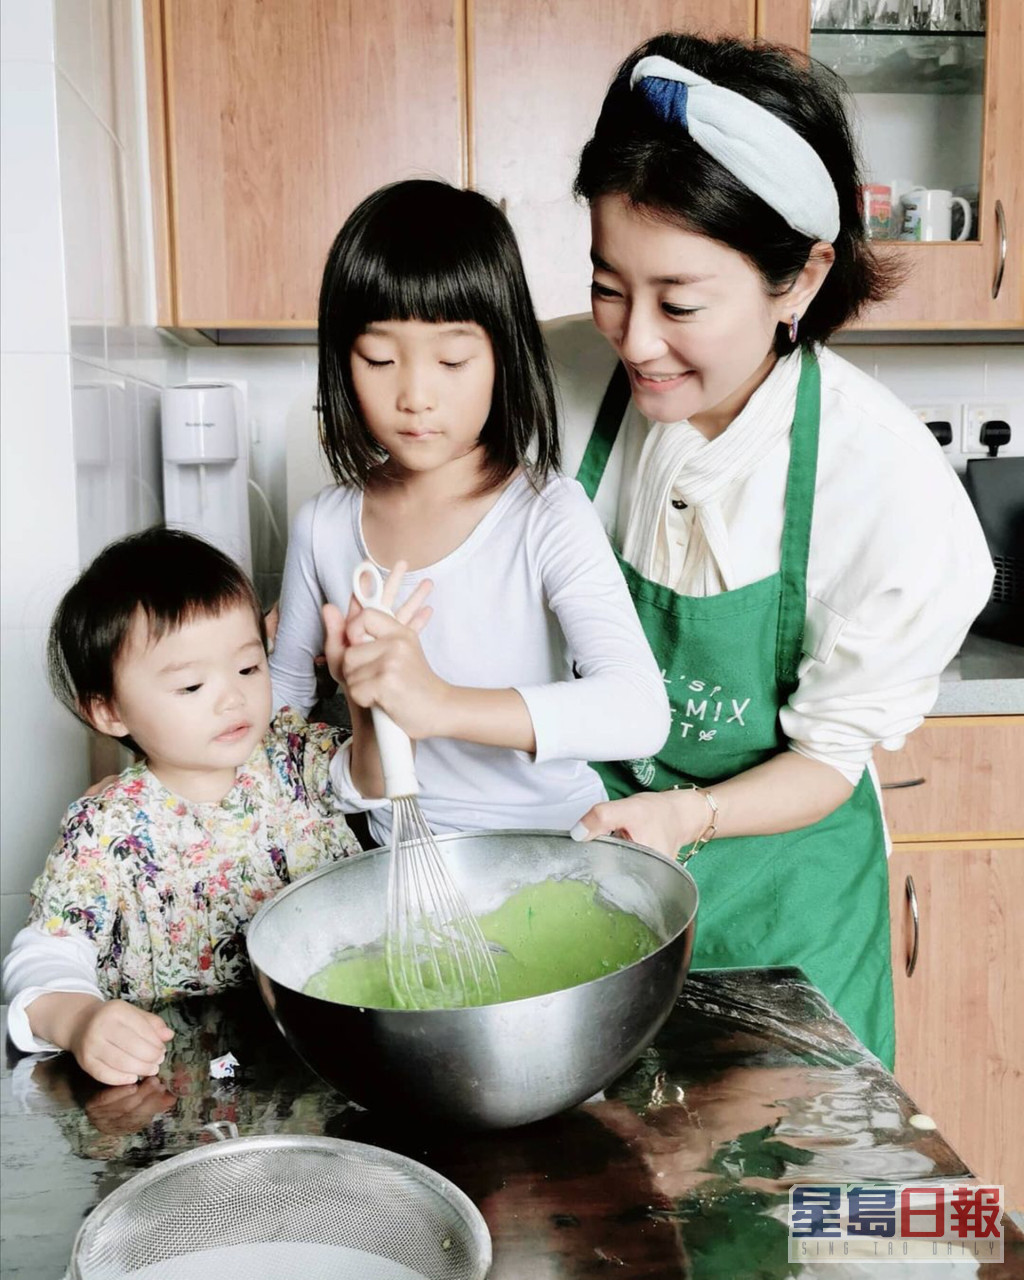 楊張新悅經常與囡囡在家中的大廚房玩下廚樂。